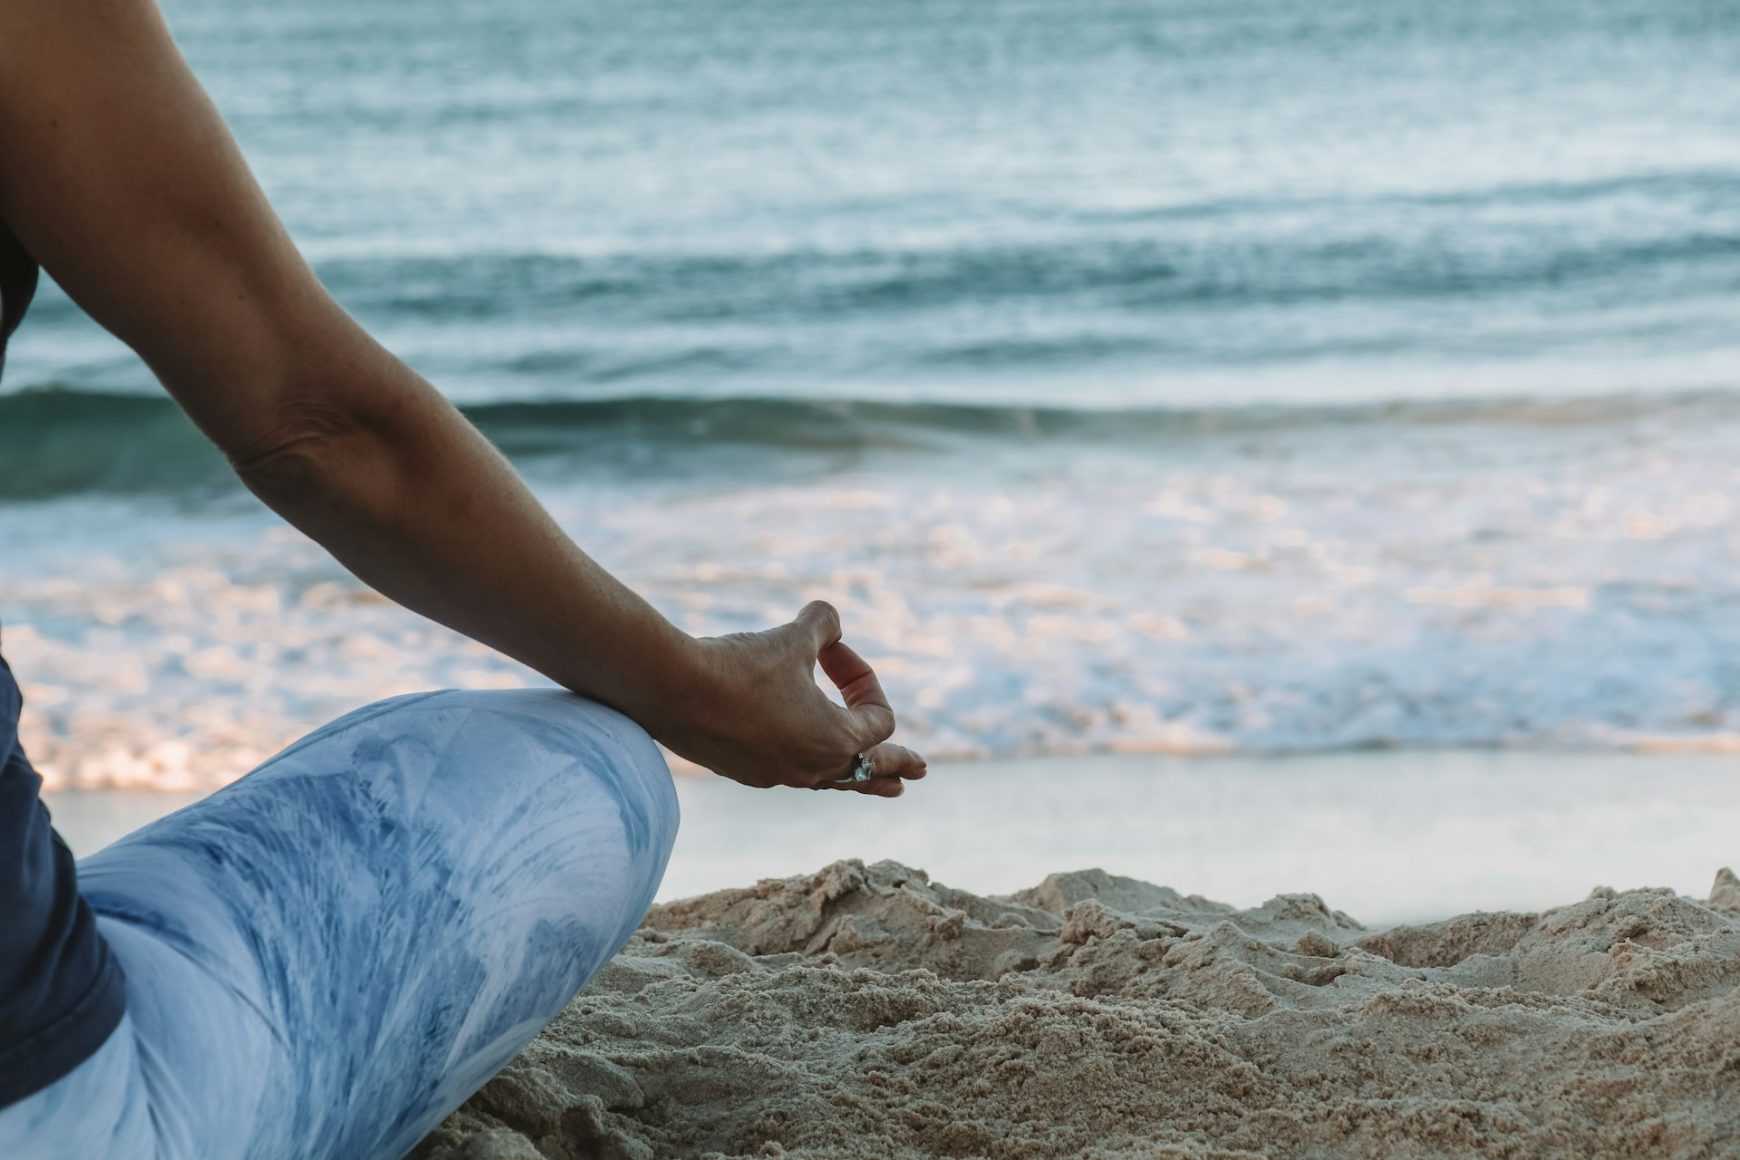 Frequenz erhöhen durch Meditation. Frau am Strand, die meditiert